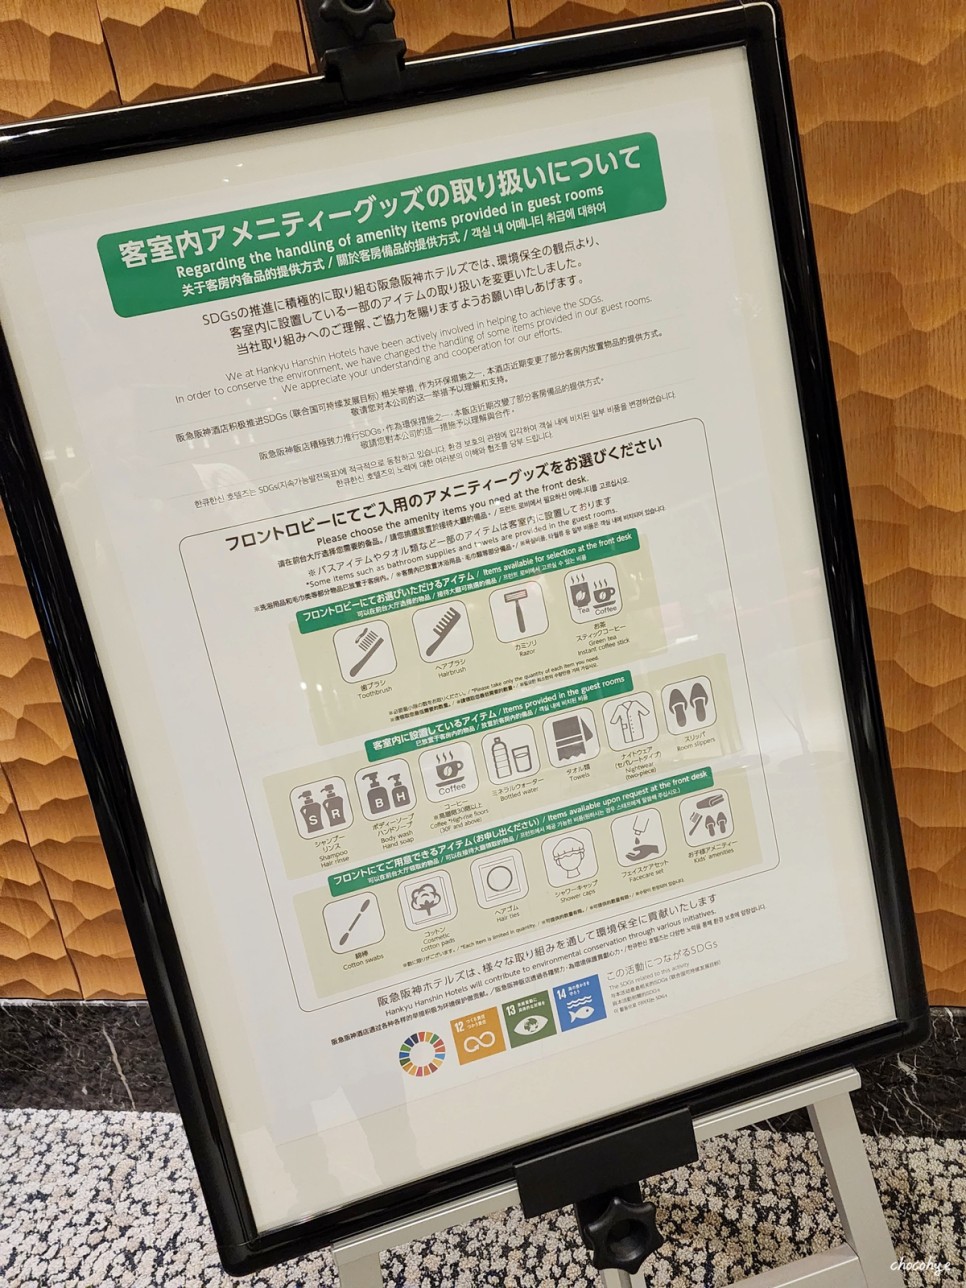 오사카 우메다 호텔 한큐 레스파이어 리스파이어 호텔 위치좋고 핫함!